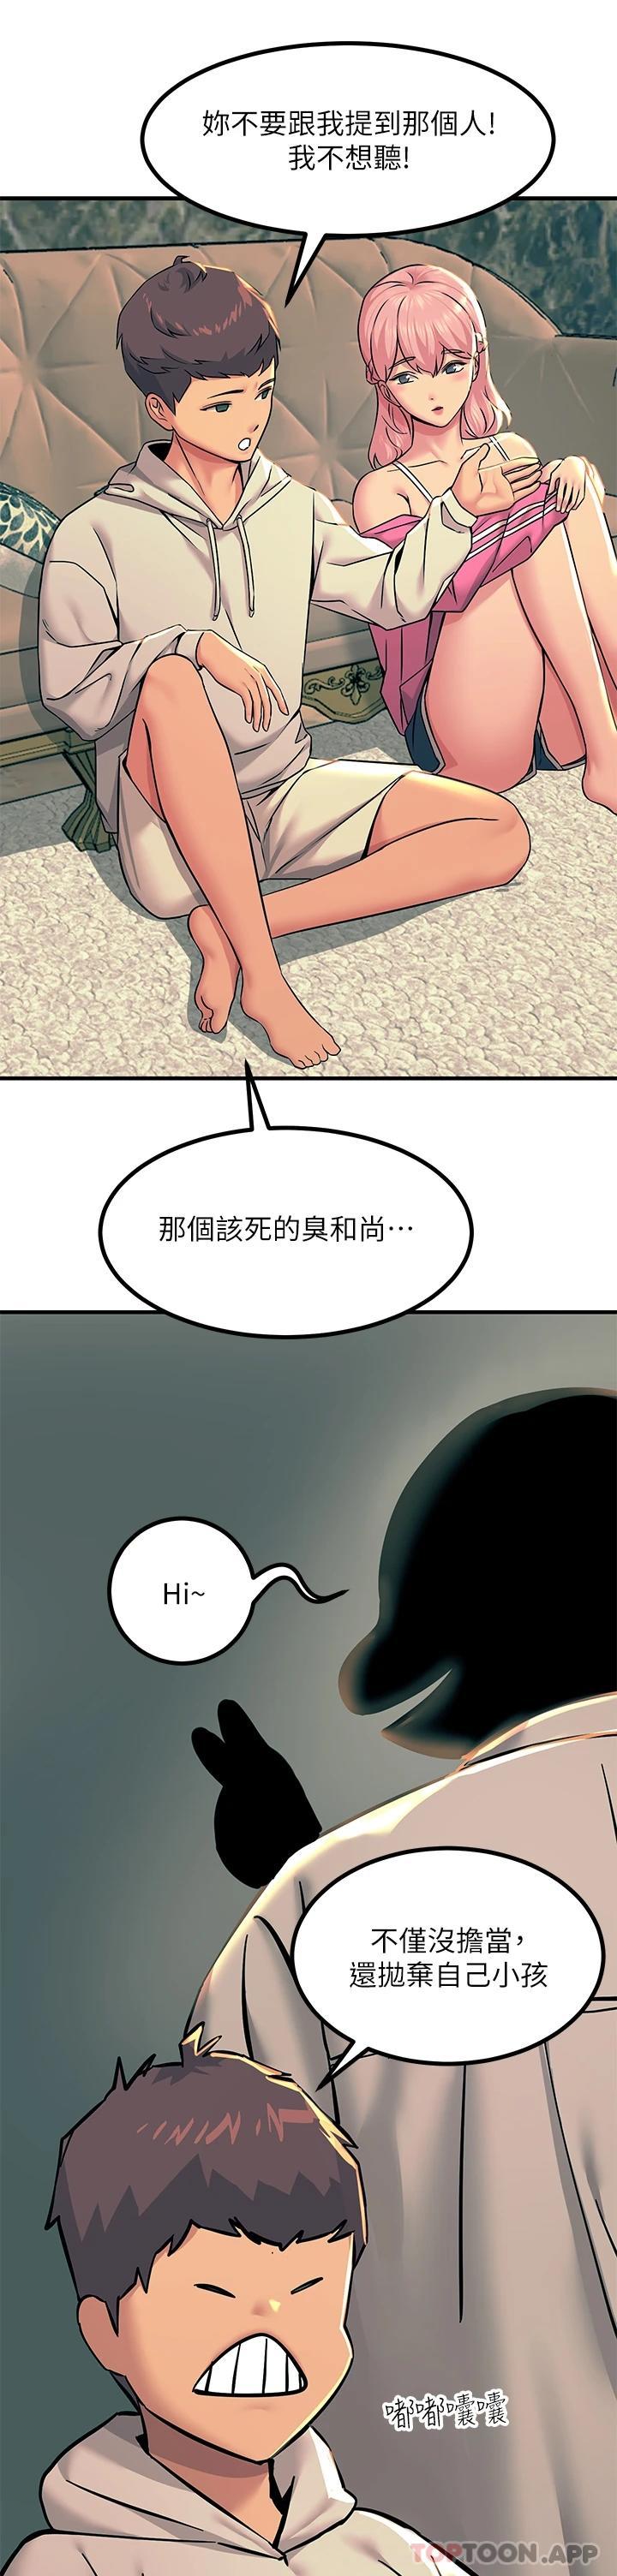 韩国污漫画 觸電大師 第20话 用胸器按摩老二的饥渴母狗 30